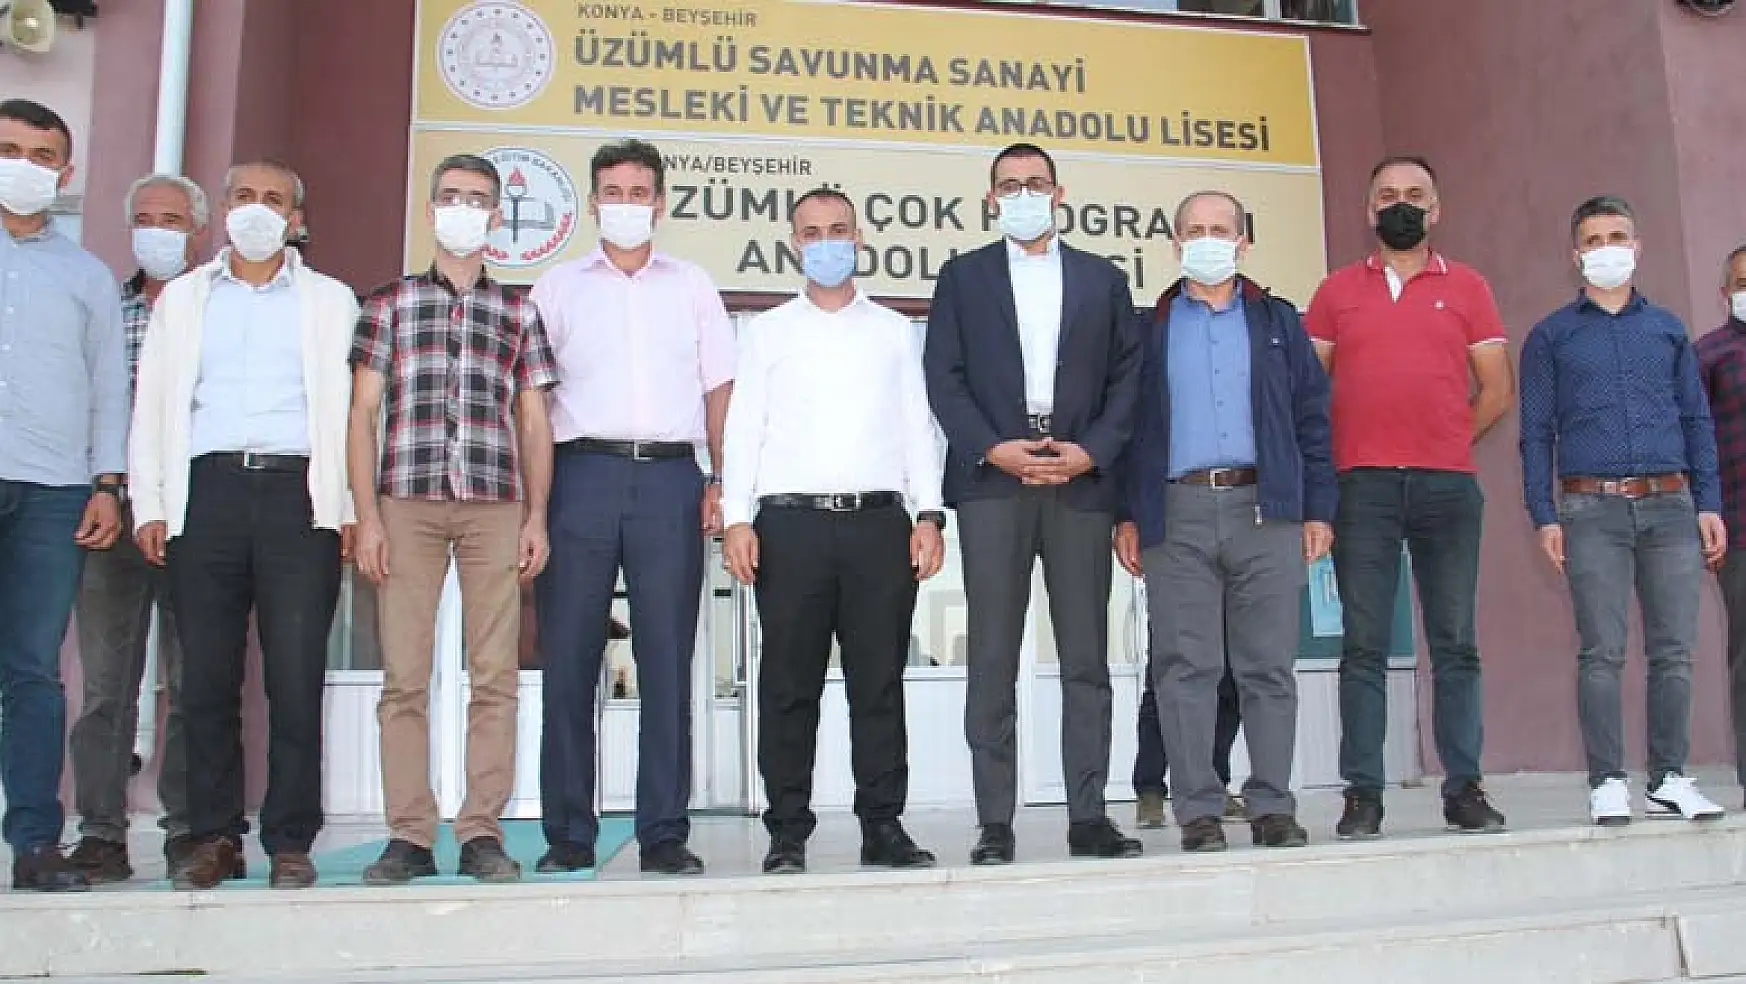 Cumhurbaşkanı Başdanışmanı Mustafa Akış Konya'nın Beyşehir ilçesini ziyaret etti